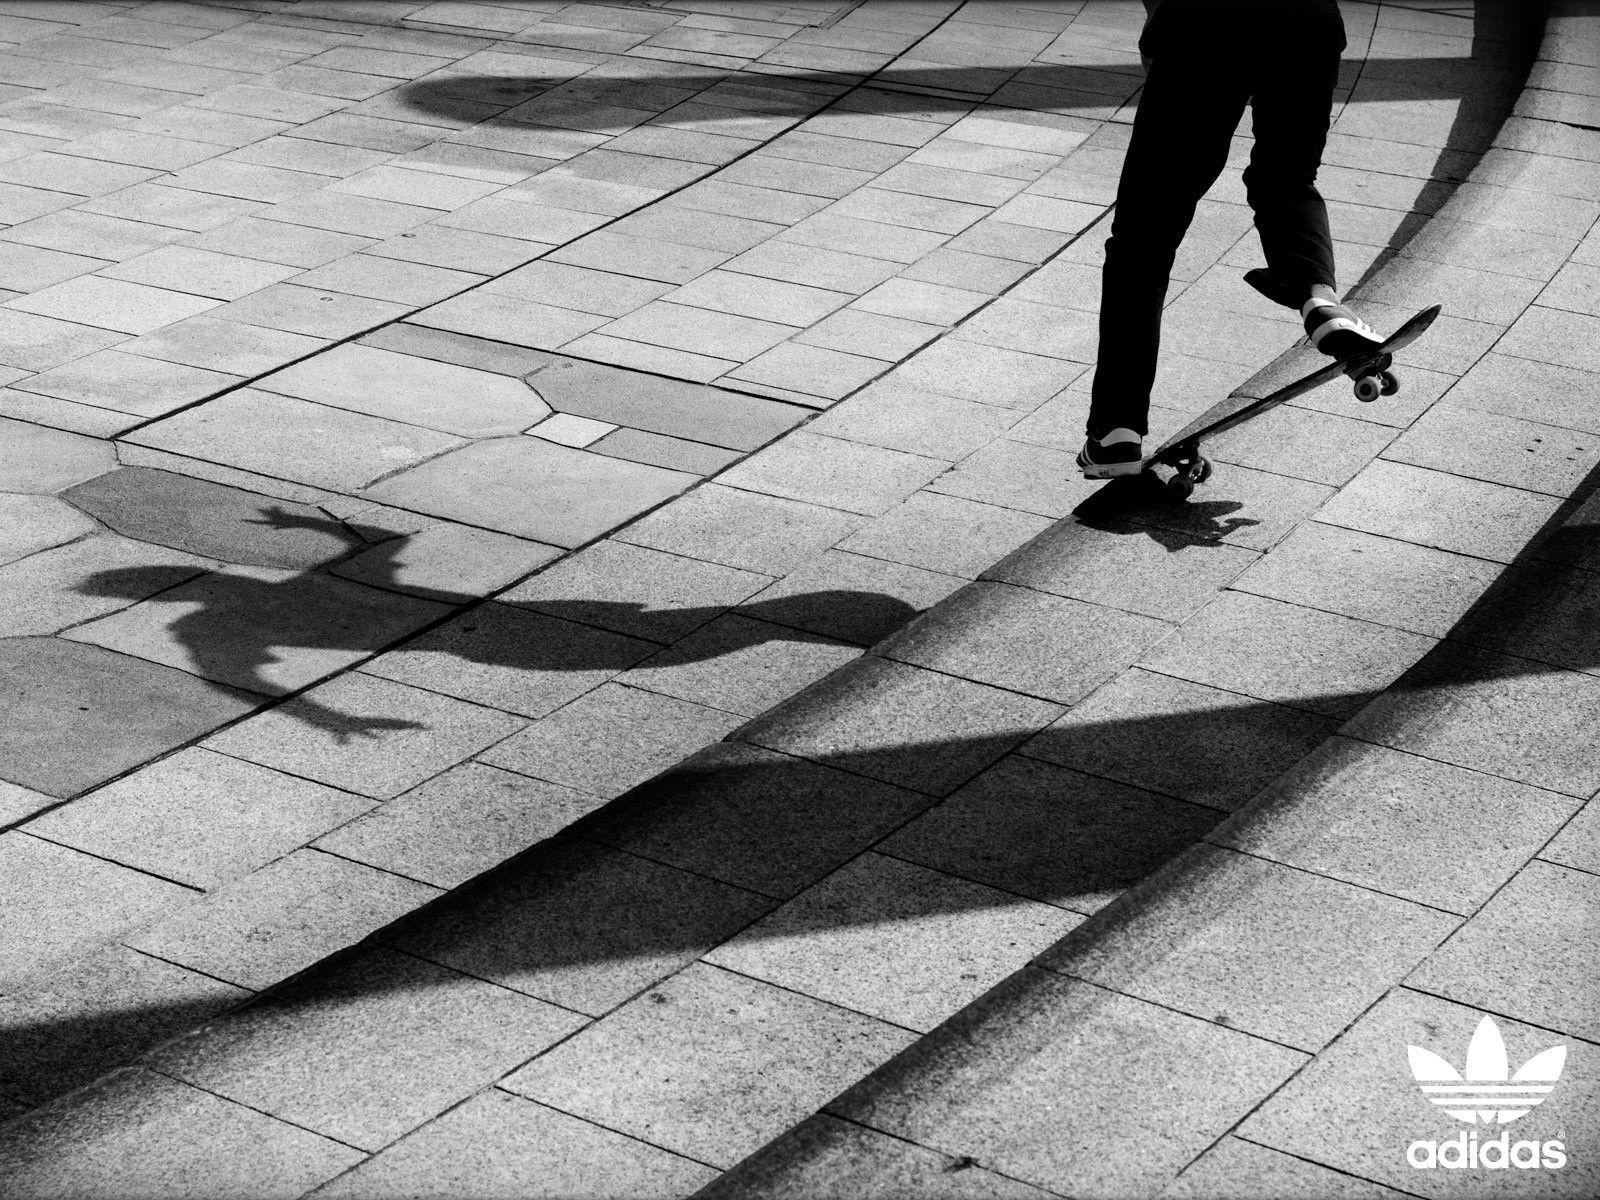 adidas skateboarding wallpaper